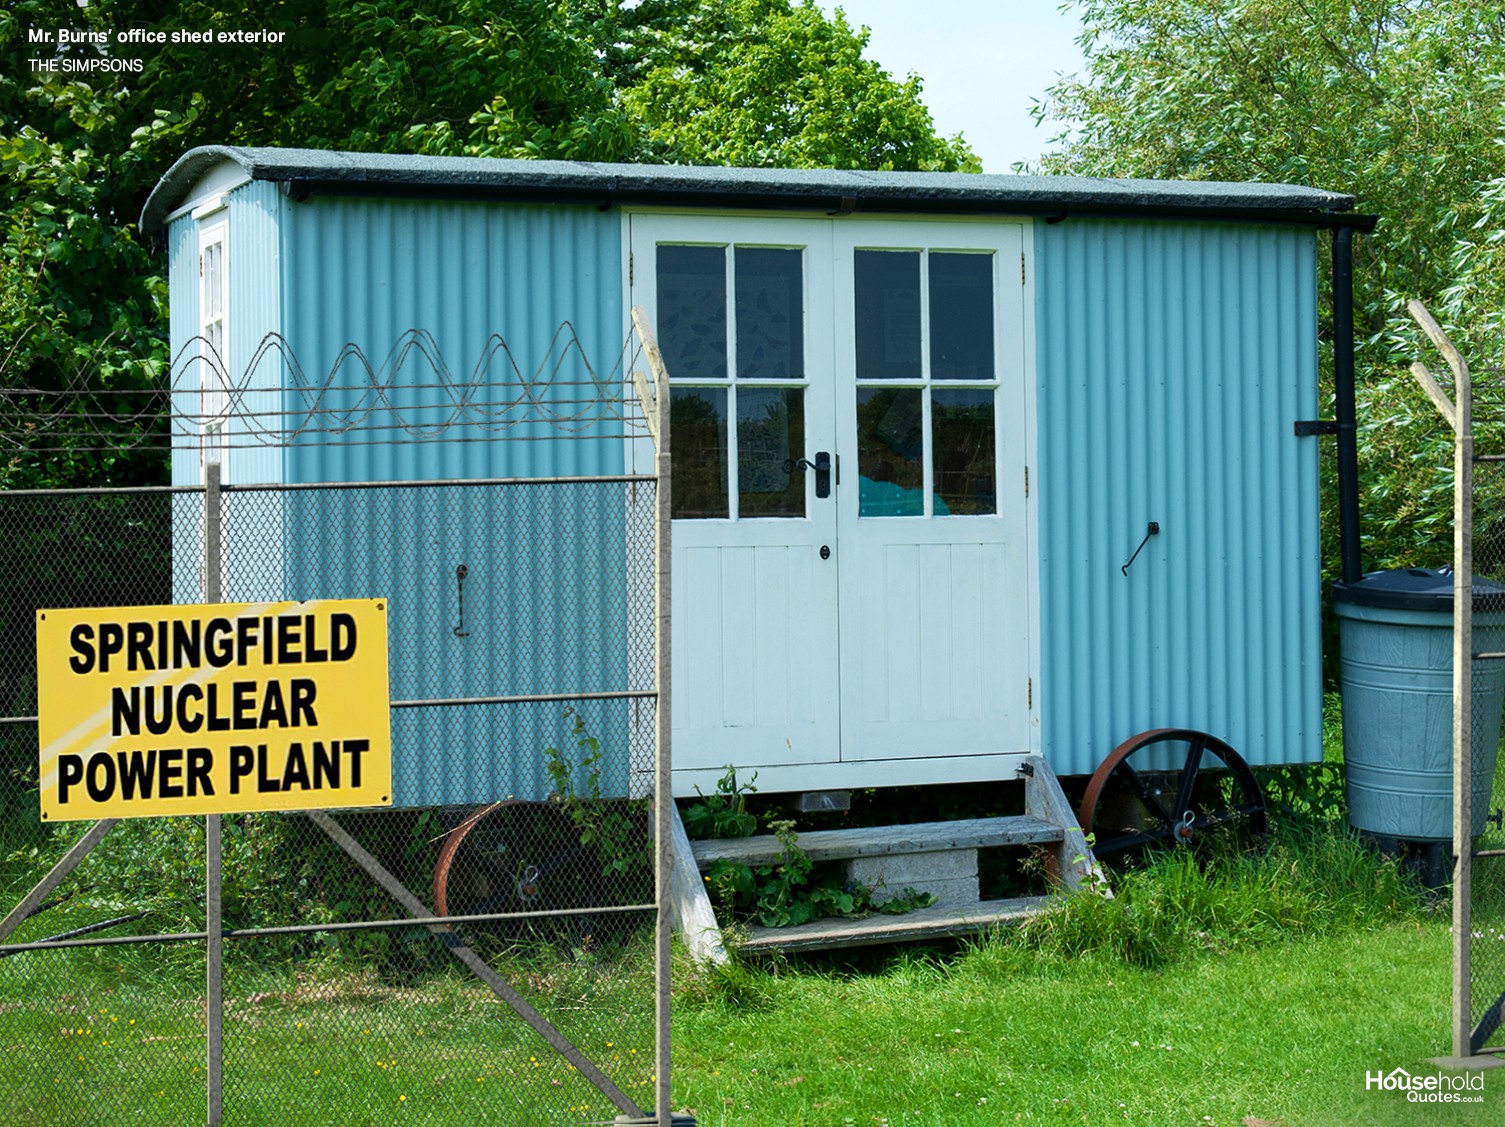 A estrutura precária da Usina Nuclear de Springfield na série é apresentada do lado de fora (Foto: HouseholdQuotes.co.uk / Divulgação)